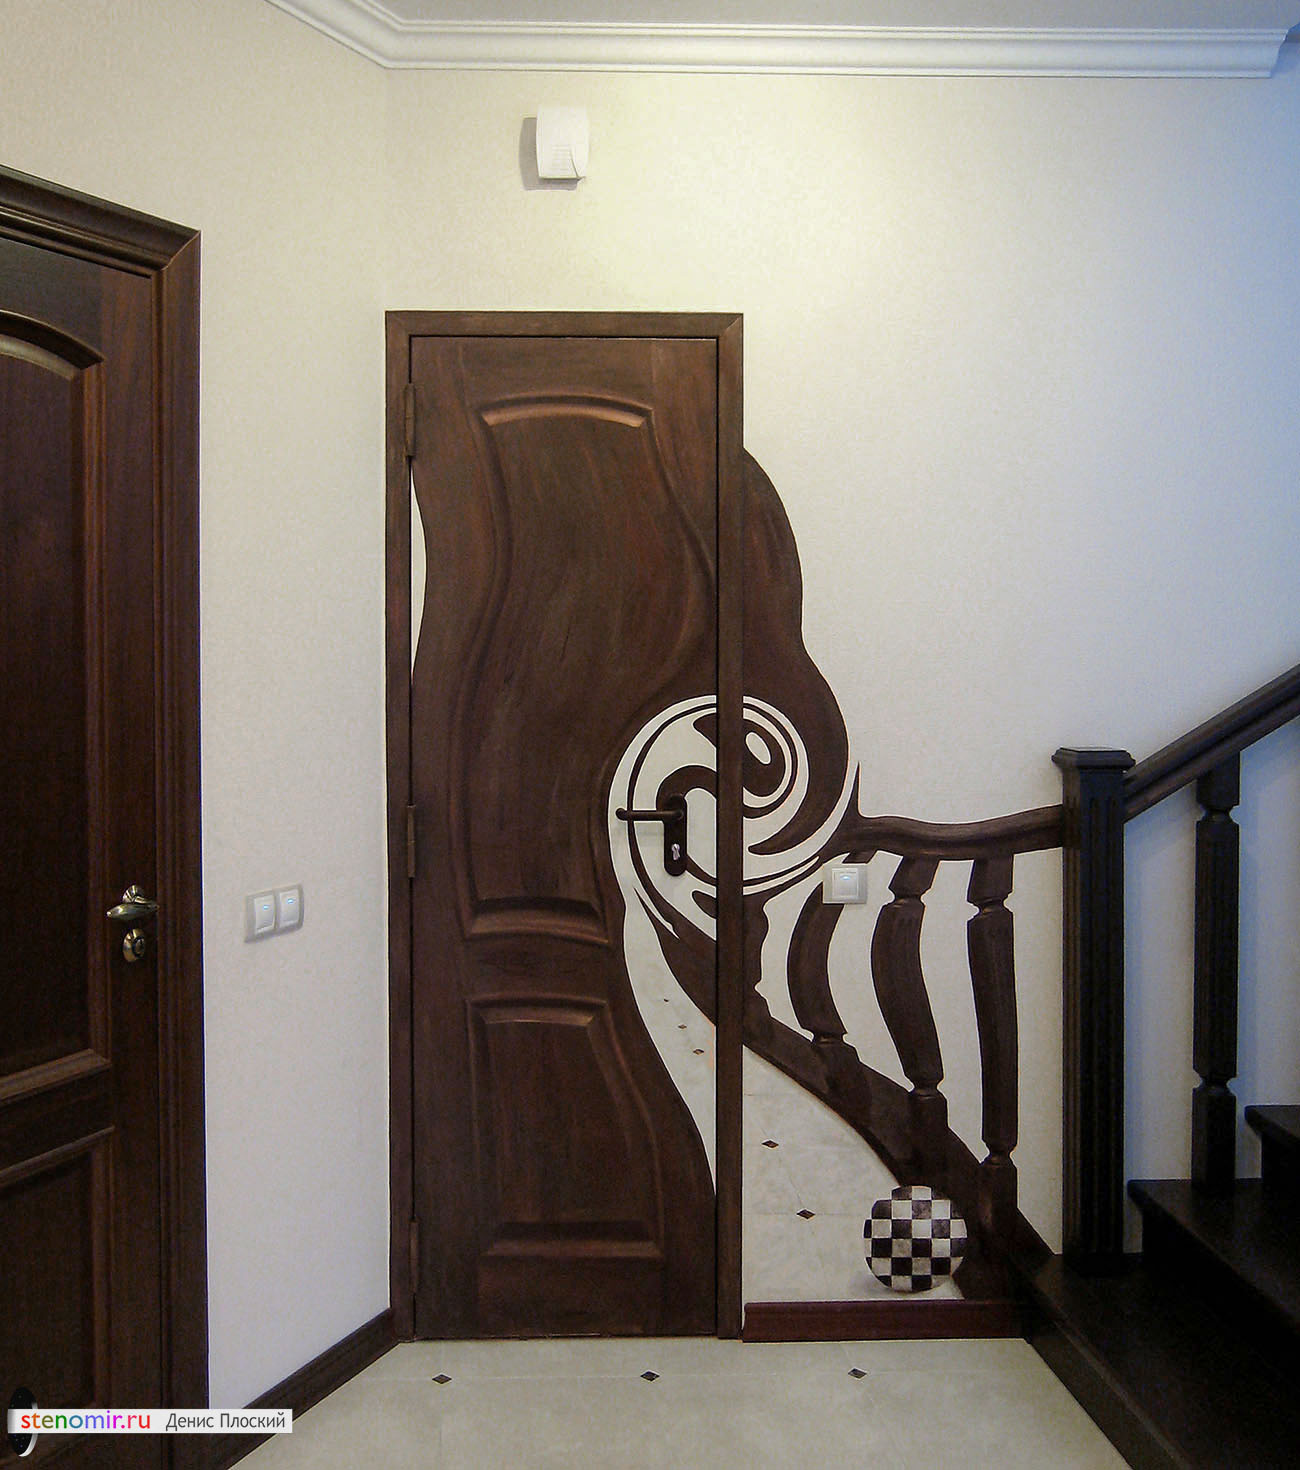 3D рисунок на стене с нарисованной деревянной дверью